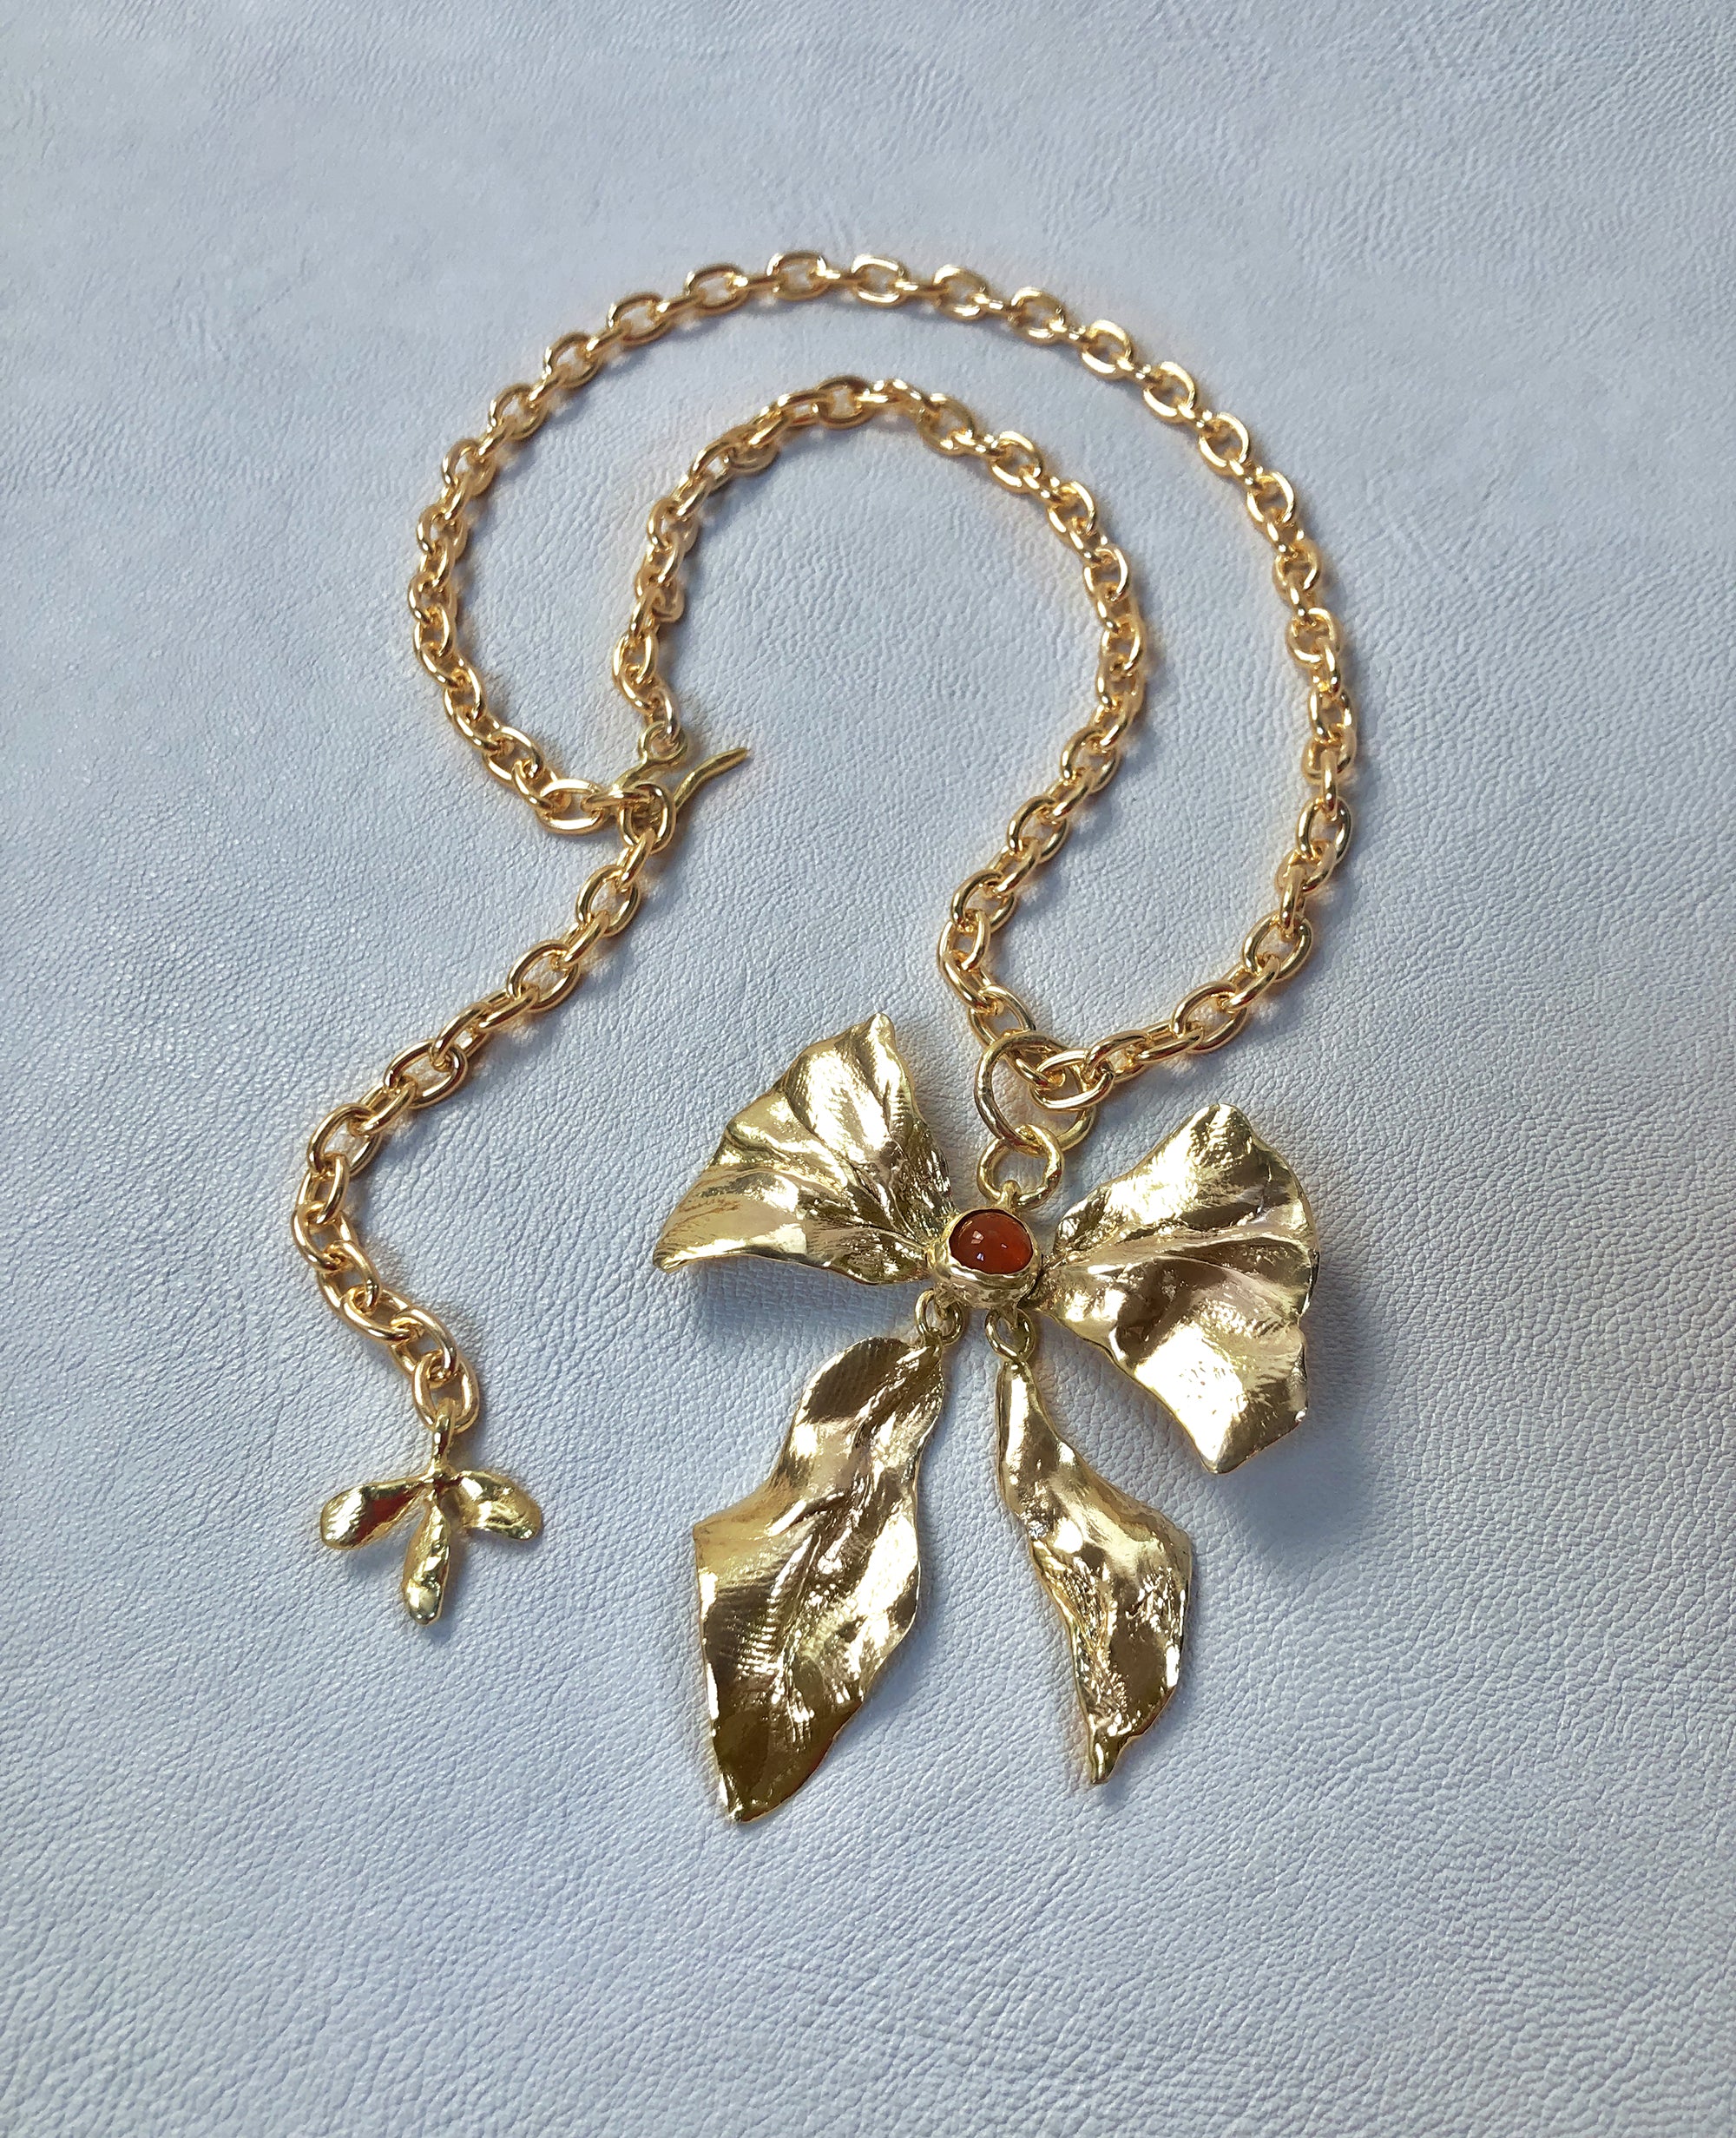 REIGN BOW // collier avec cornaline - ORA-C jewelry - bijoux faits à la main par Caroline Pham, designer indépendante basée à Montréal